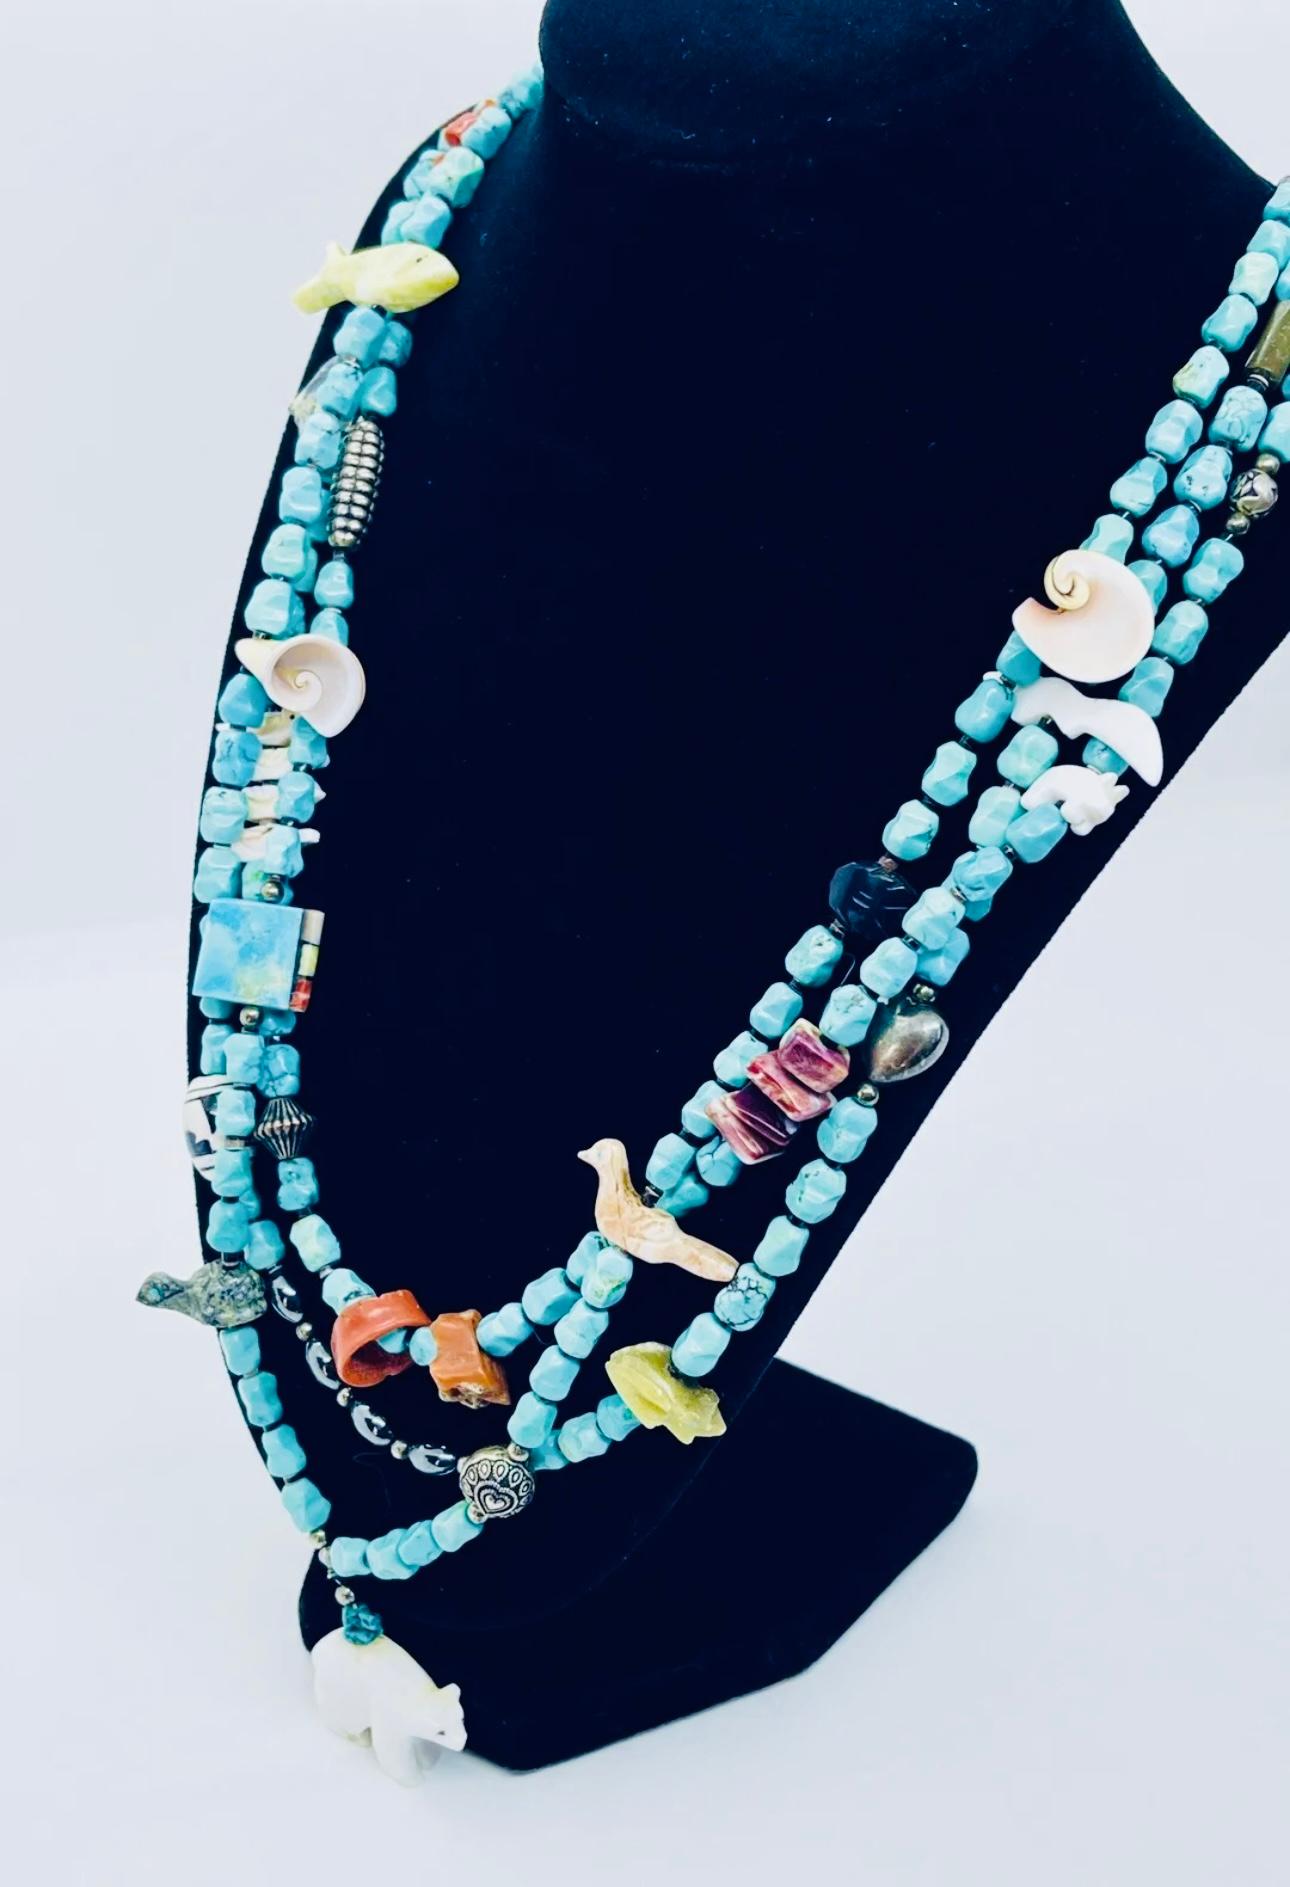 Wichtige One of a Kind Unique Native American Hand geschnitzt Santo Domingo Multi Strang Fetisch Perlen Halskette.

Die Stränge sind: 30